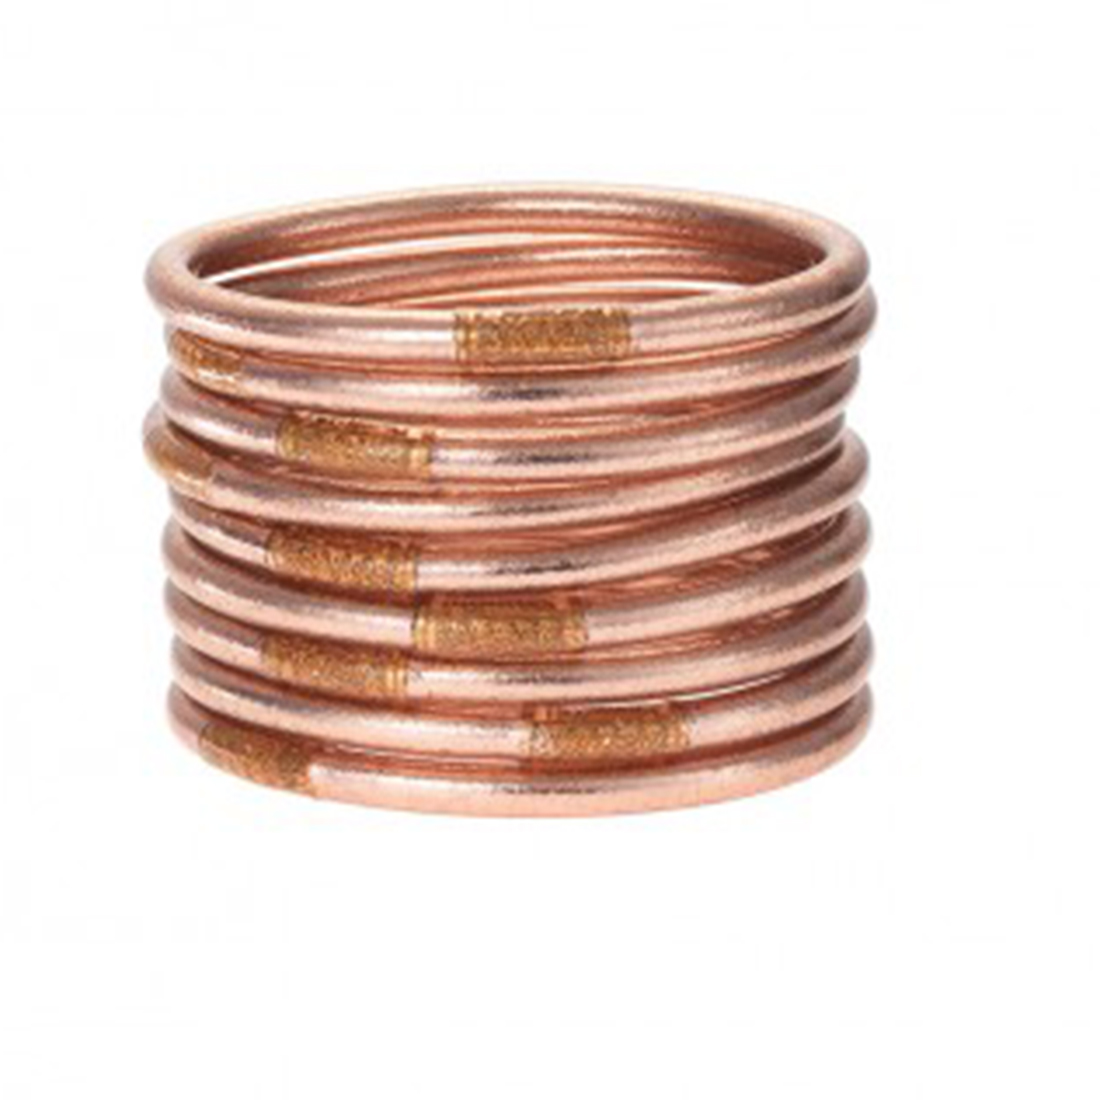 budha girl all weather bracelets set of 9 rosegold size medium 93109